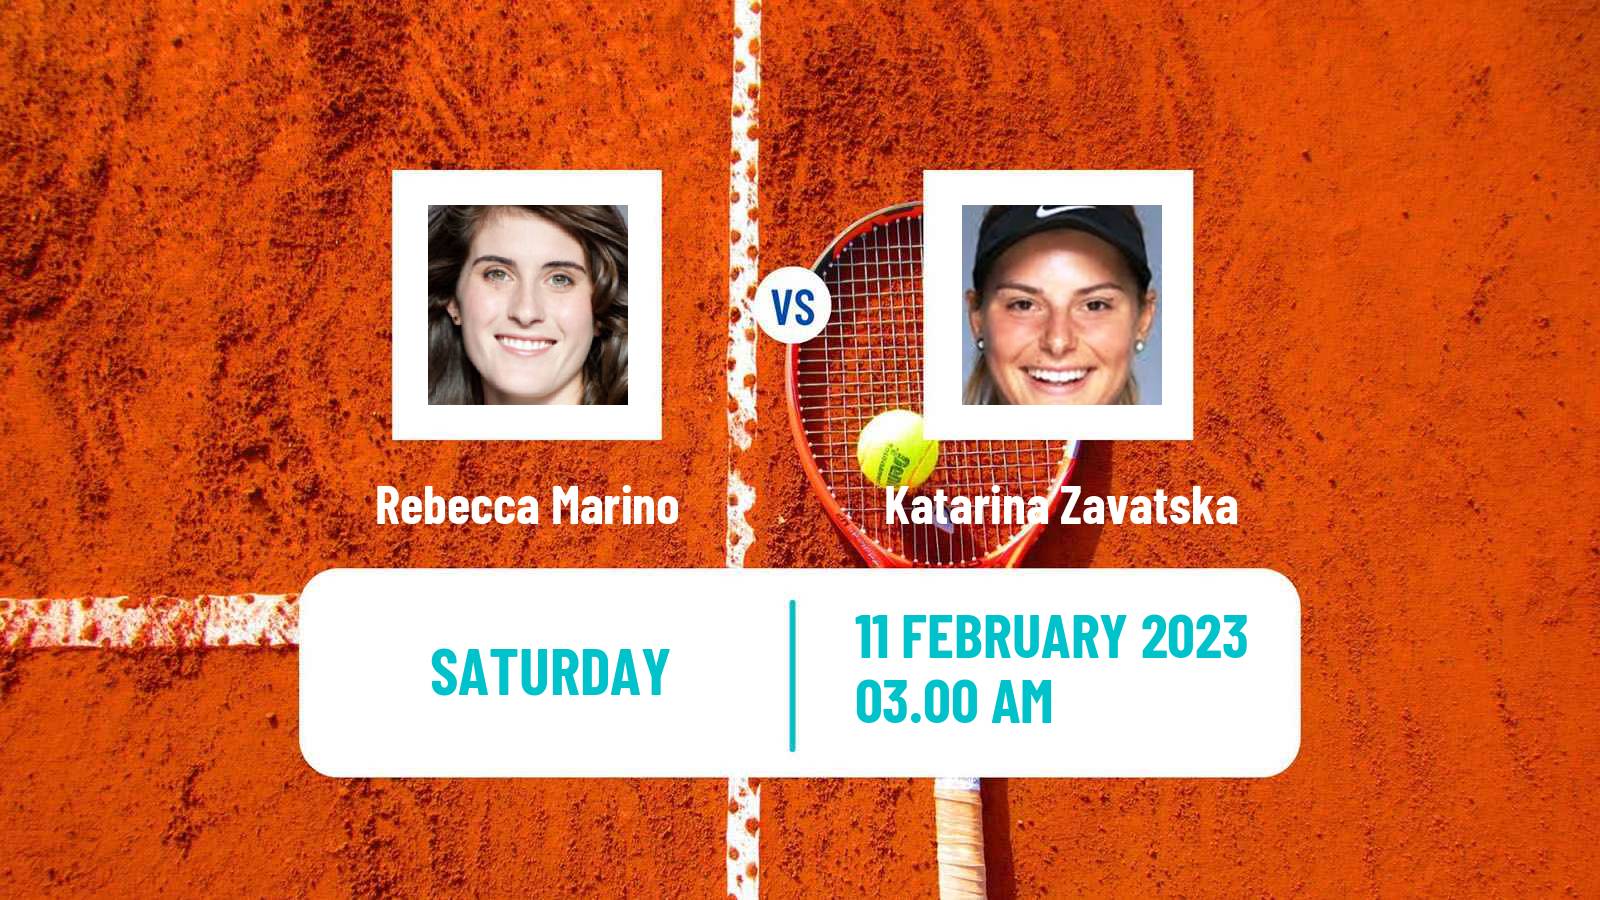 Tennis WTA Doha Rebecca Marino - Katarina Zavatska